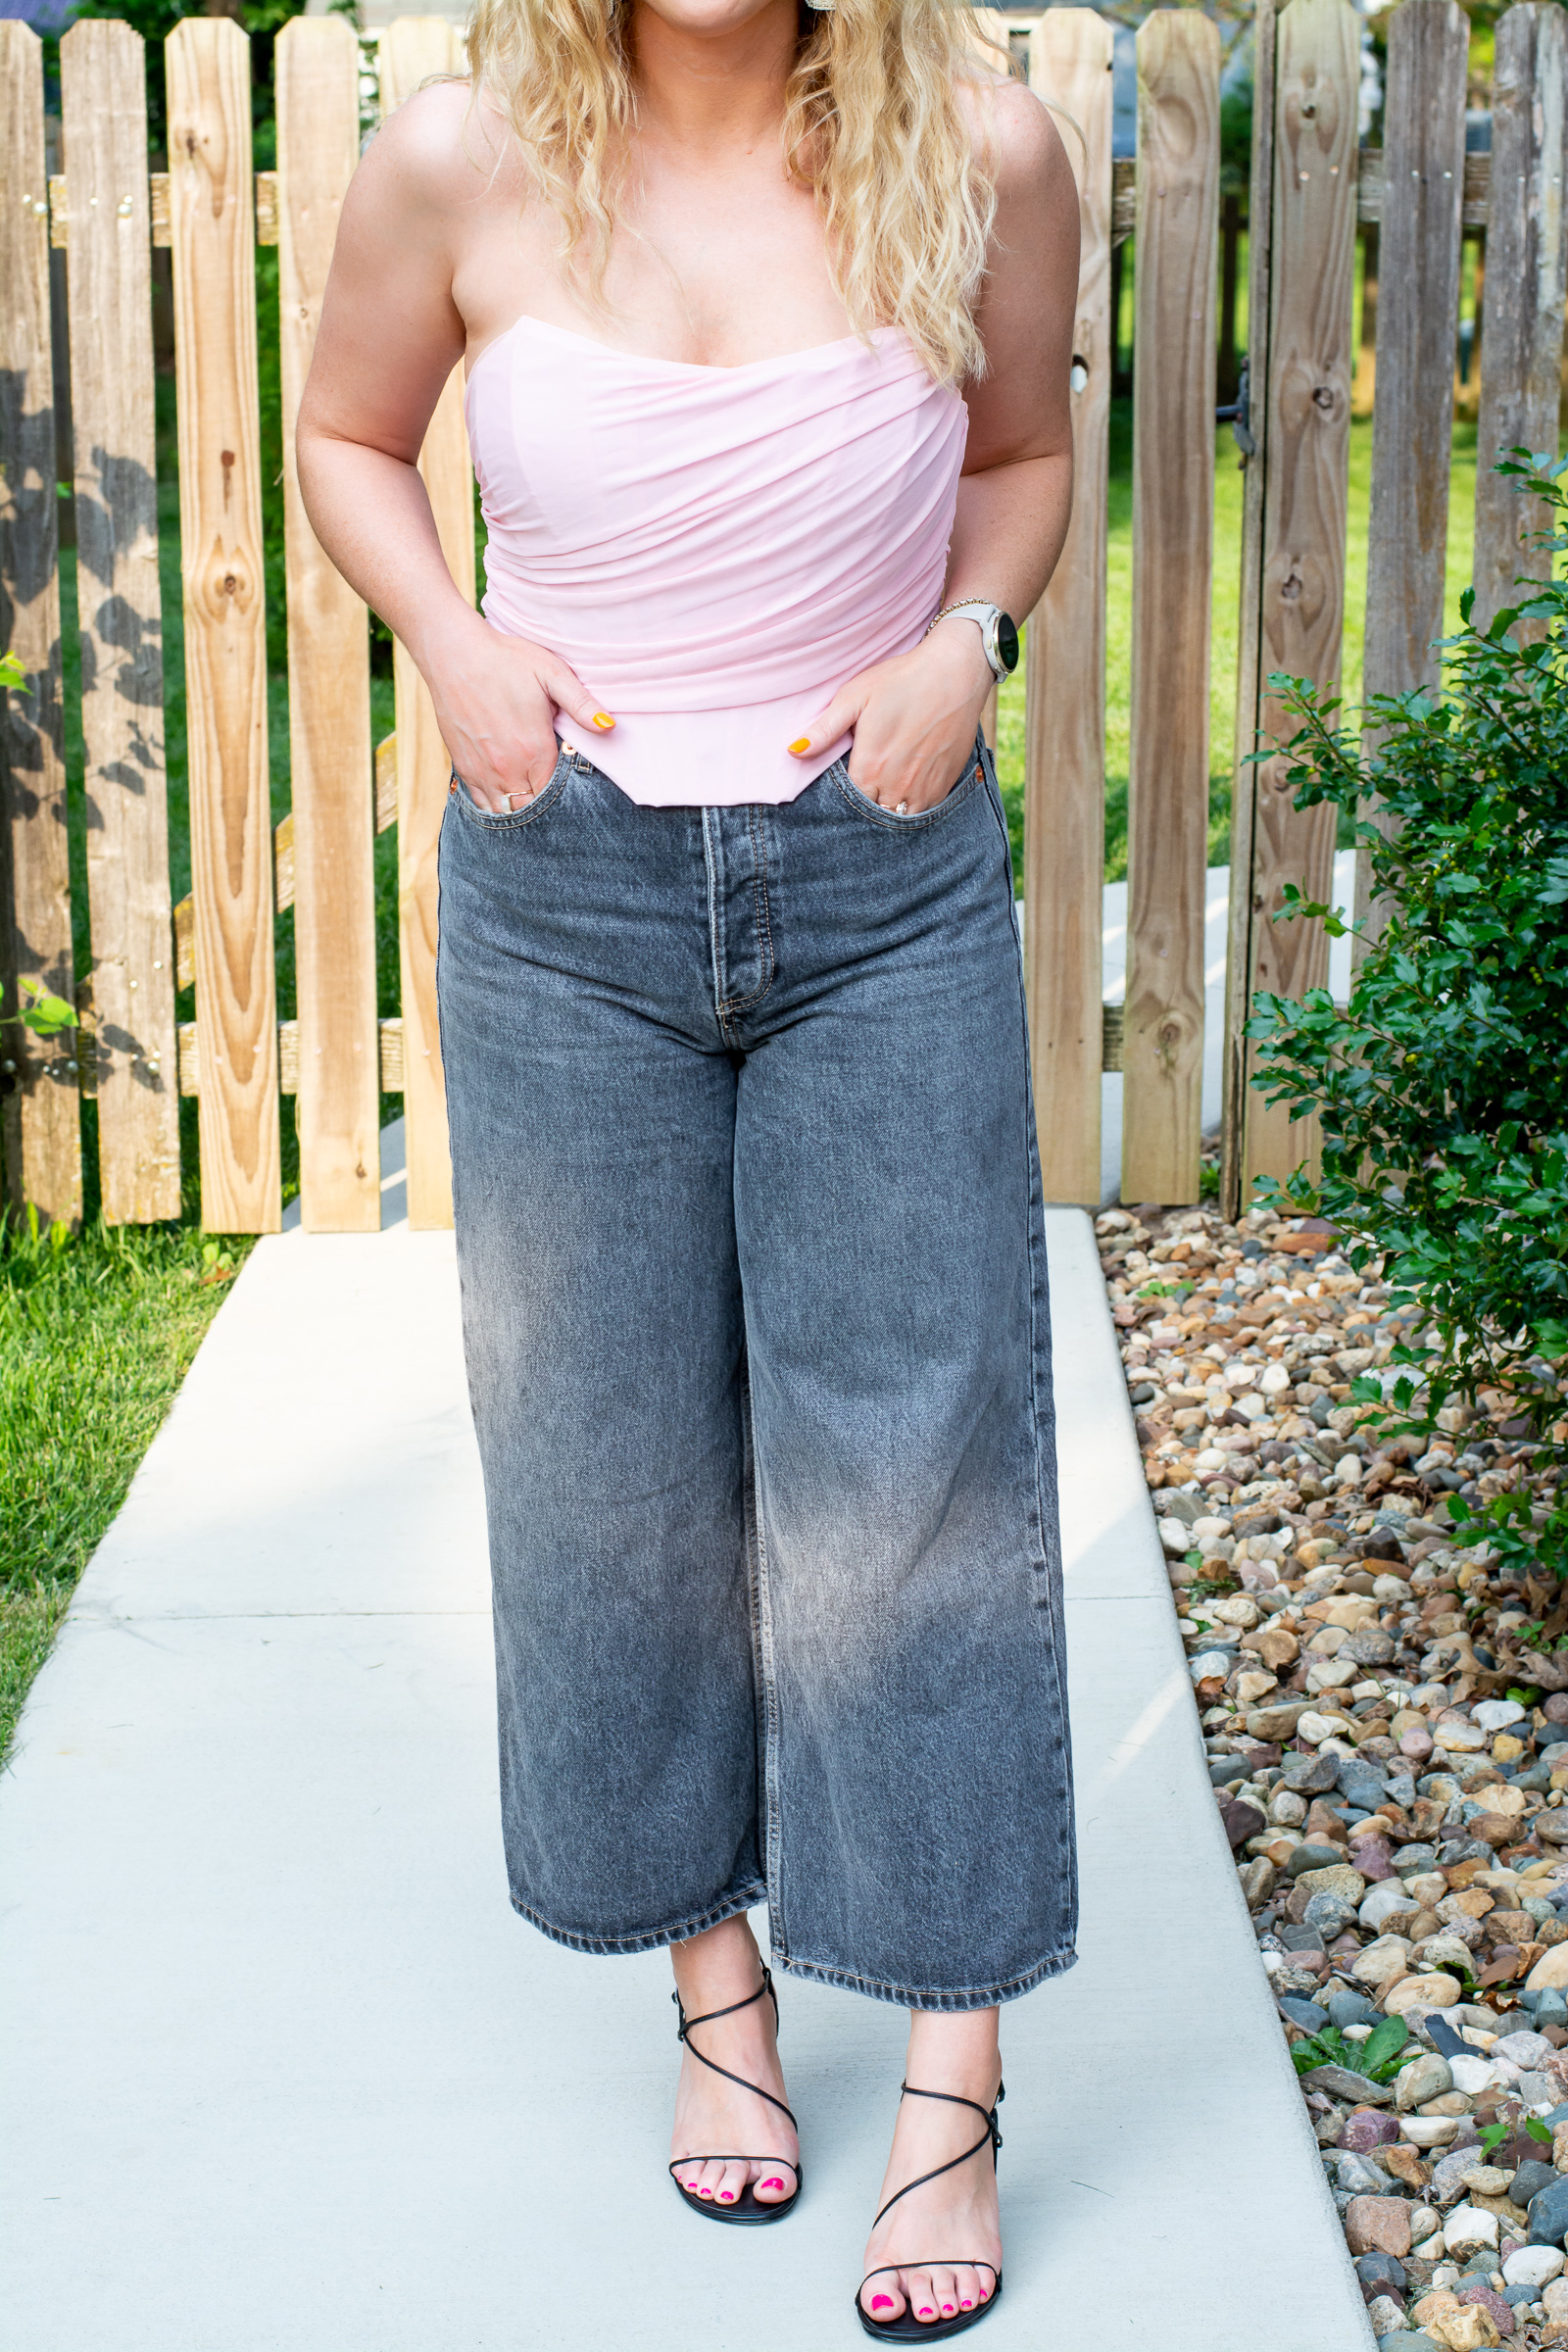 The $25 Amazon Corset Top + Wide-Leg Culotte Jeans. | LSR